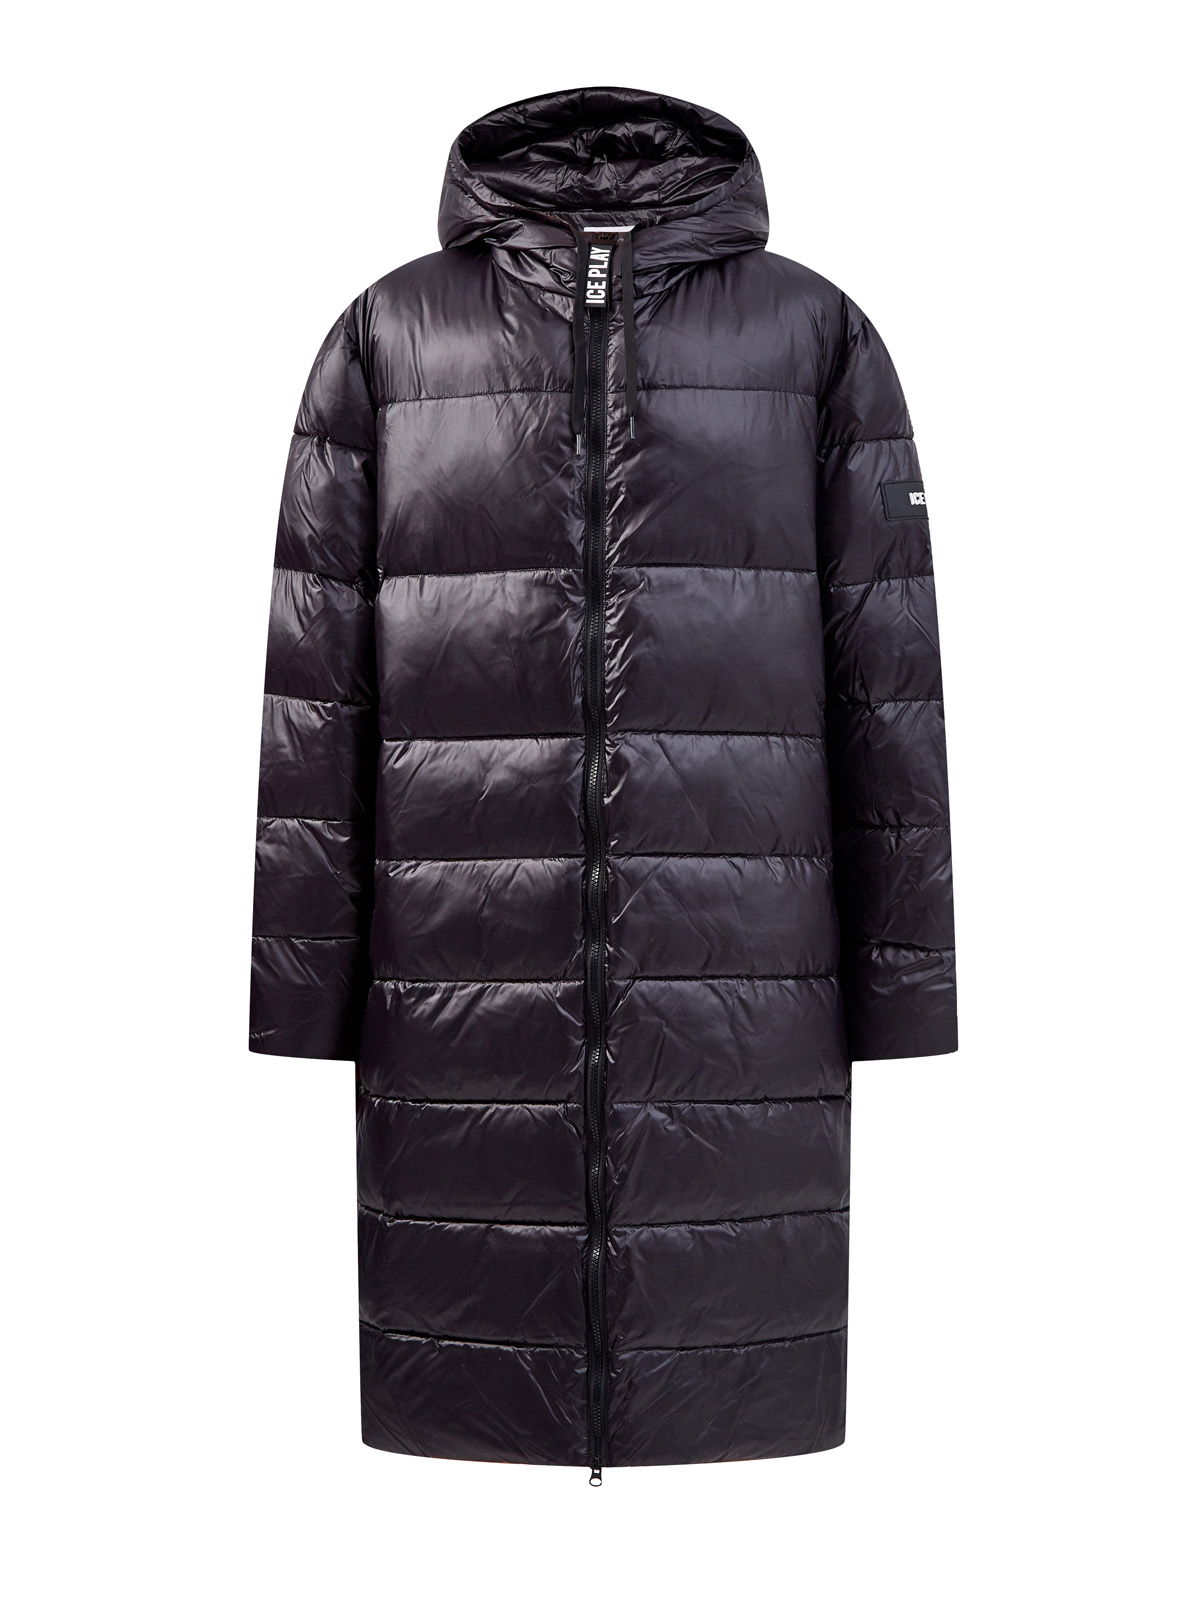 Удлиненная куртка из влагостойкого нейлона Ripstop ICE PLAY, цвет черный, размер M;L;XL;2XL - фото 1